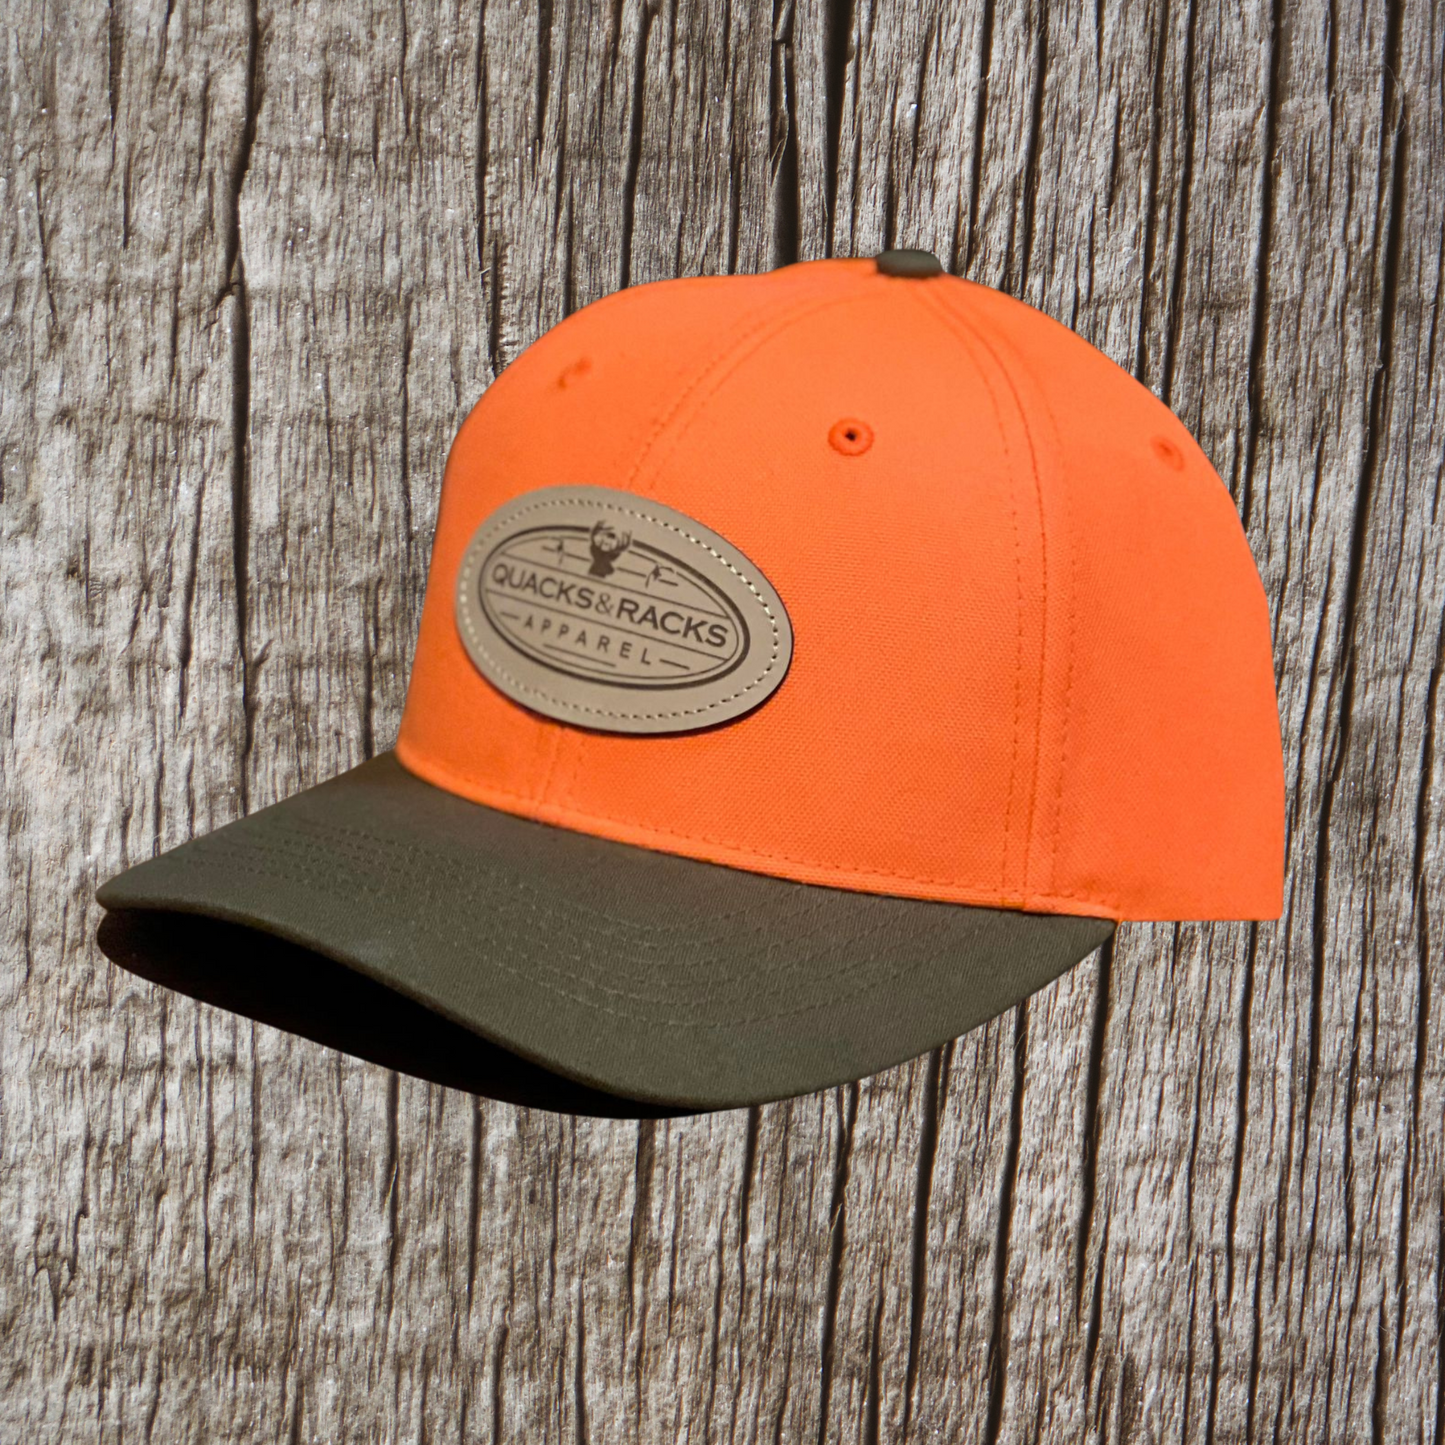 Blaze Orange & Brown Duck Cloth Bill Hat